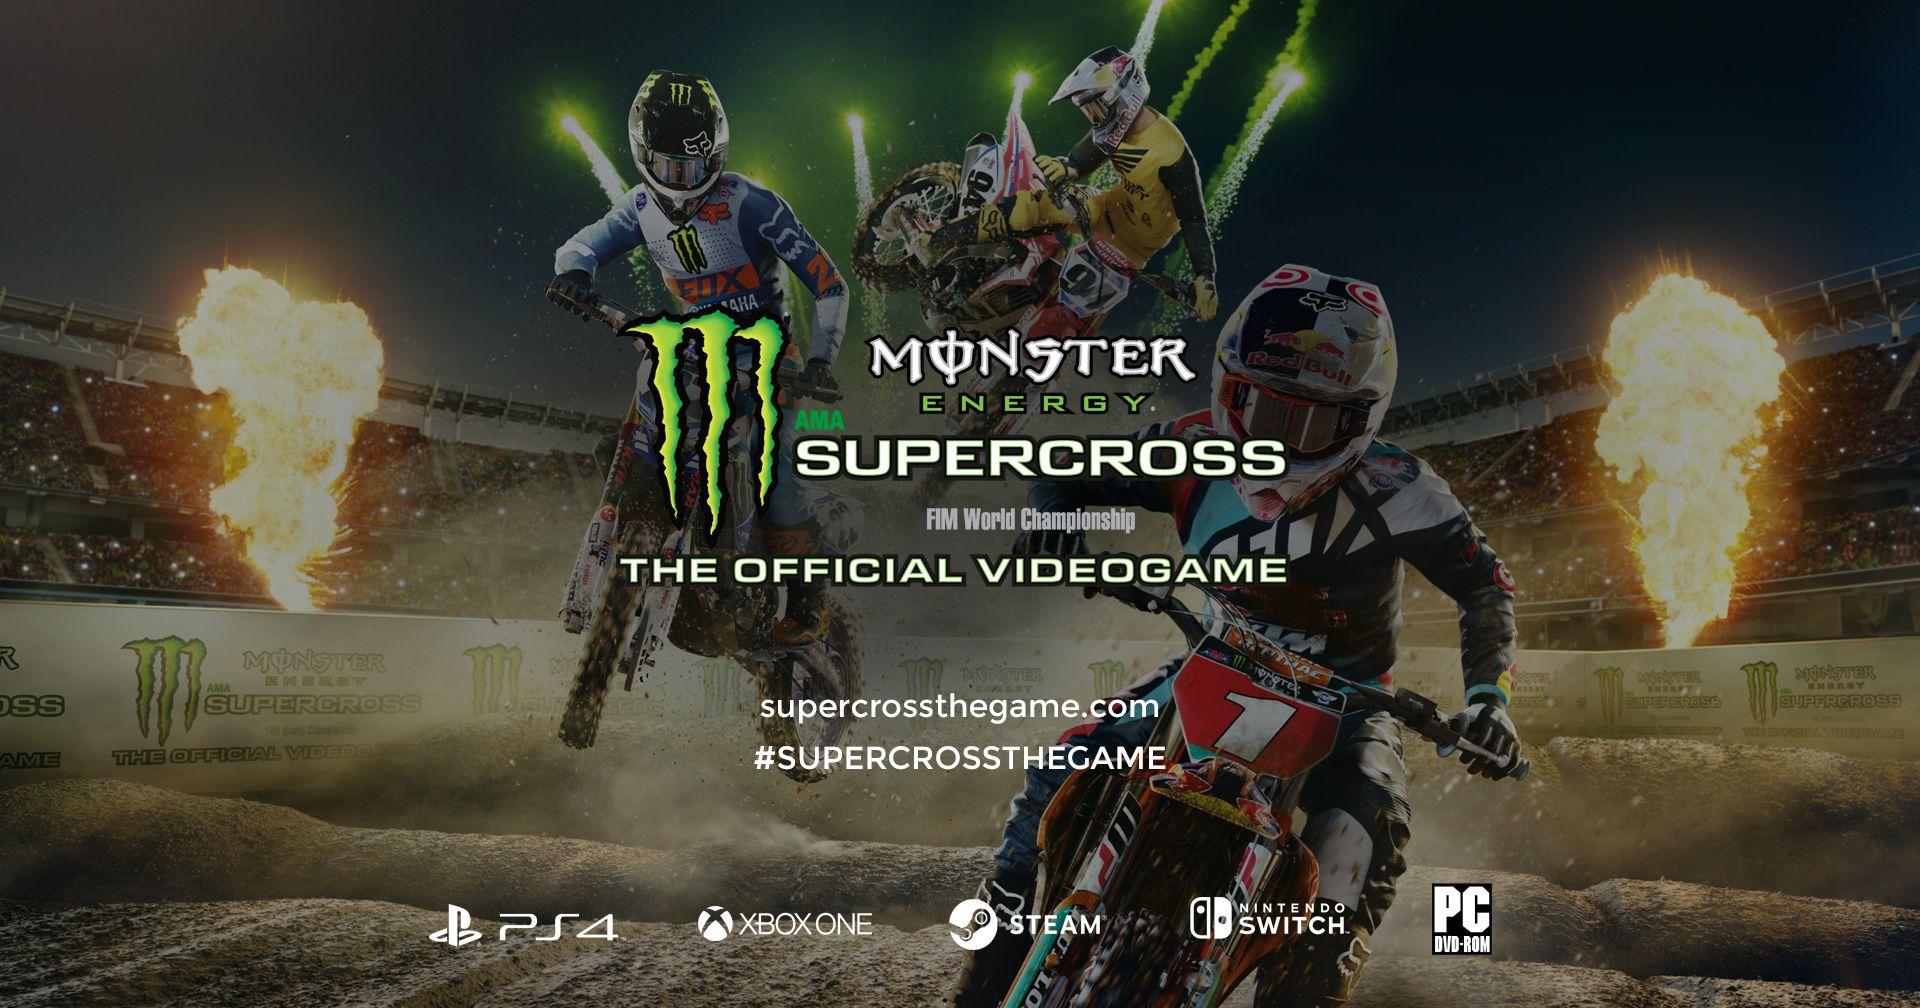 Monster Energy Supercross Official Videogame